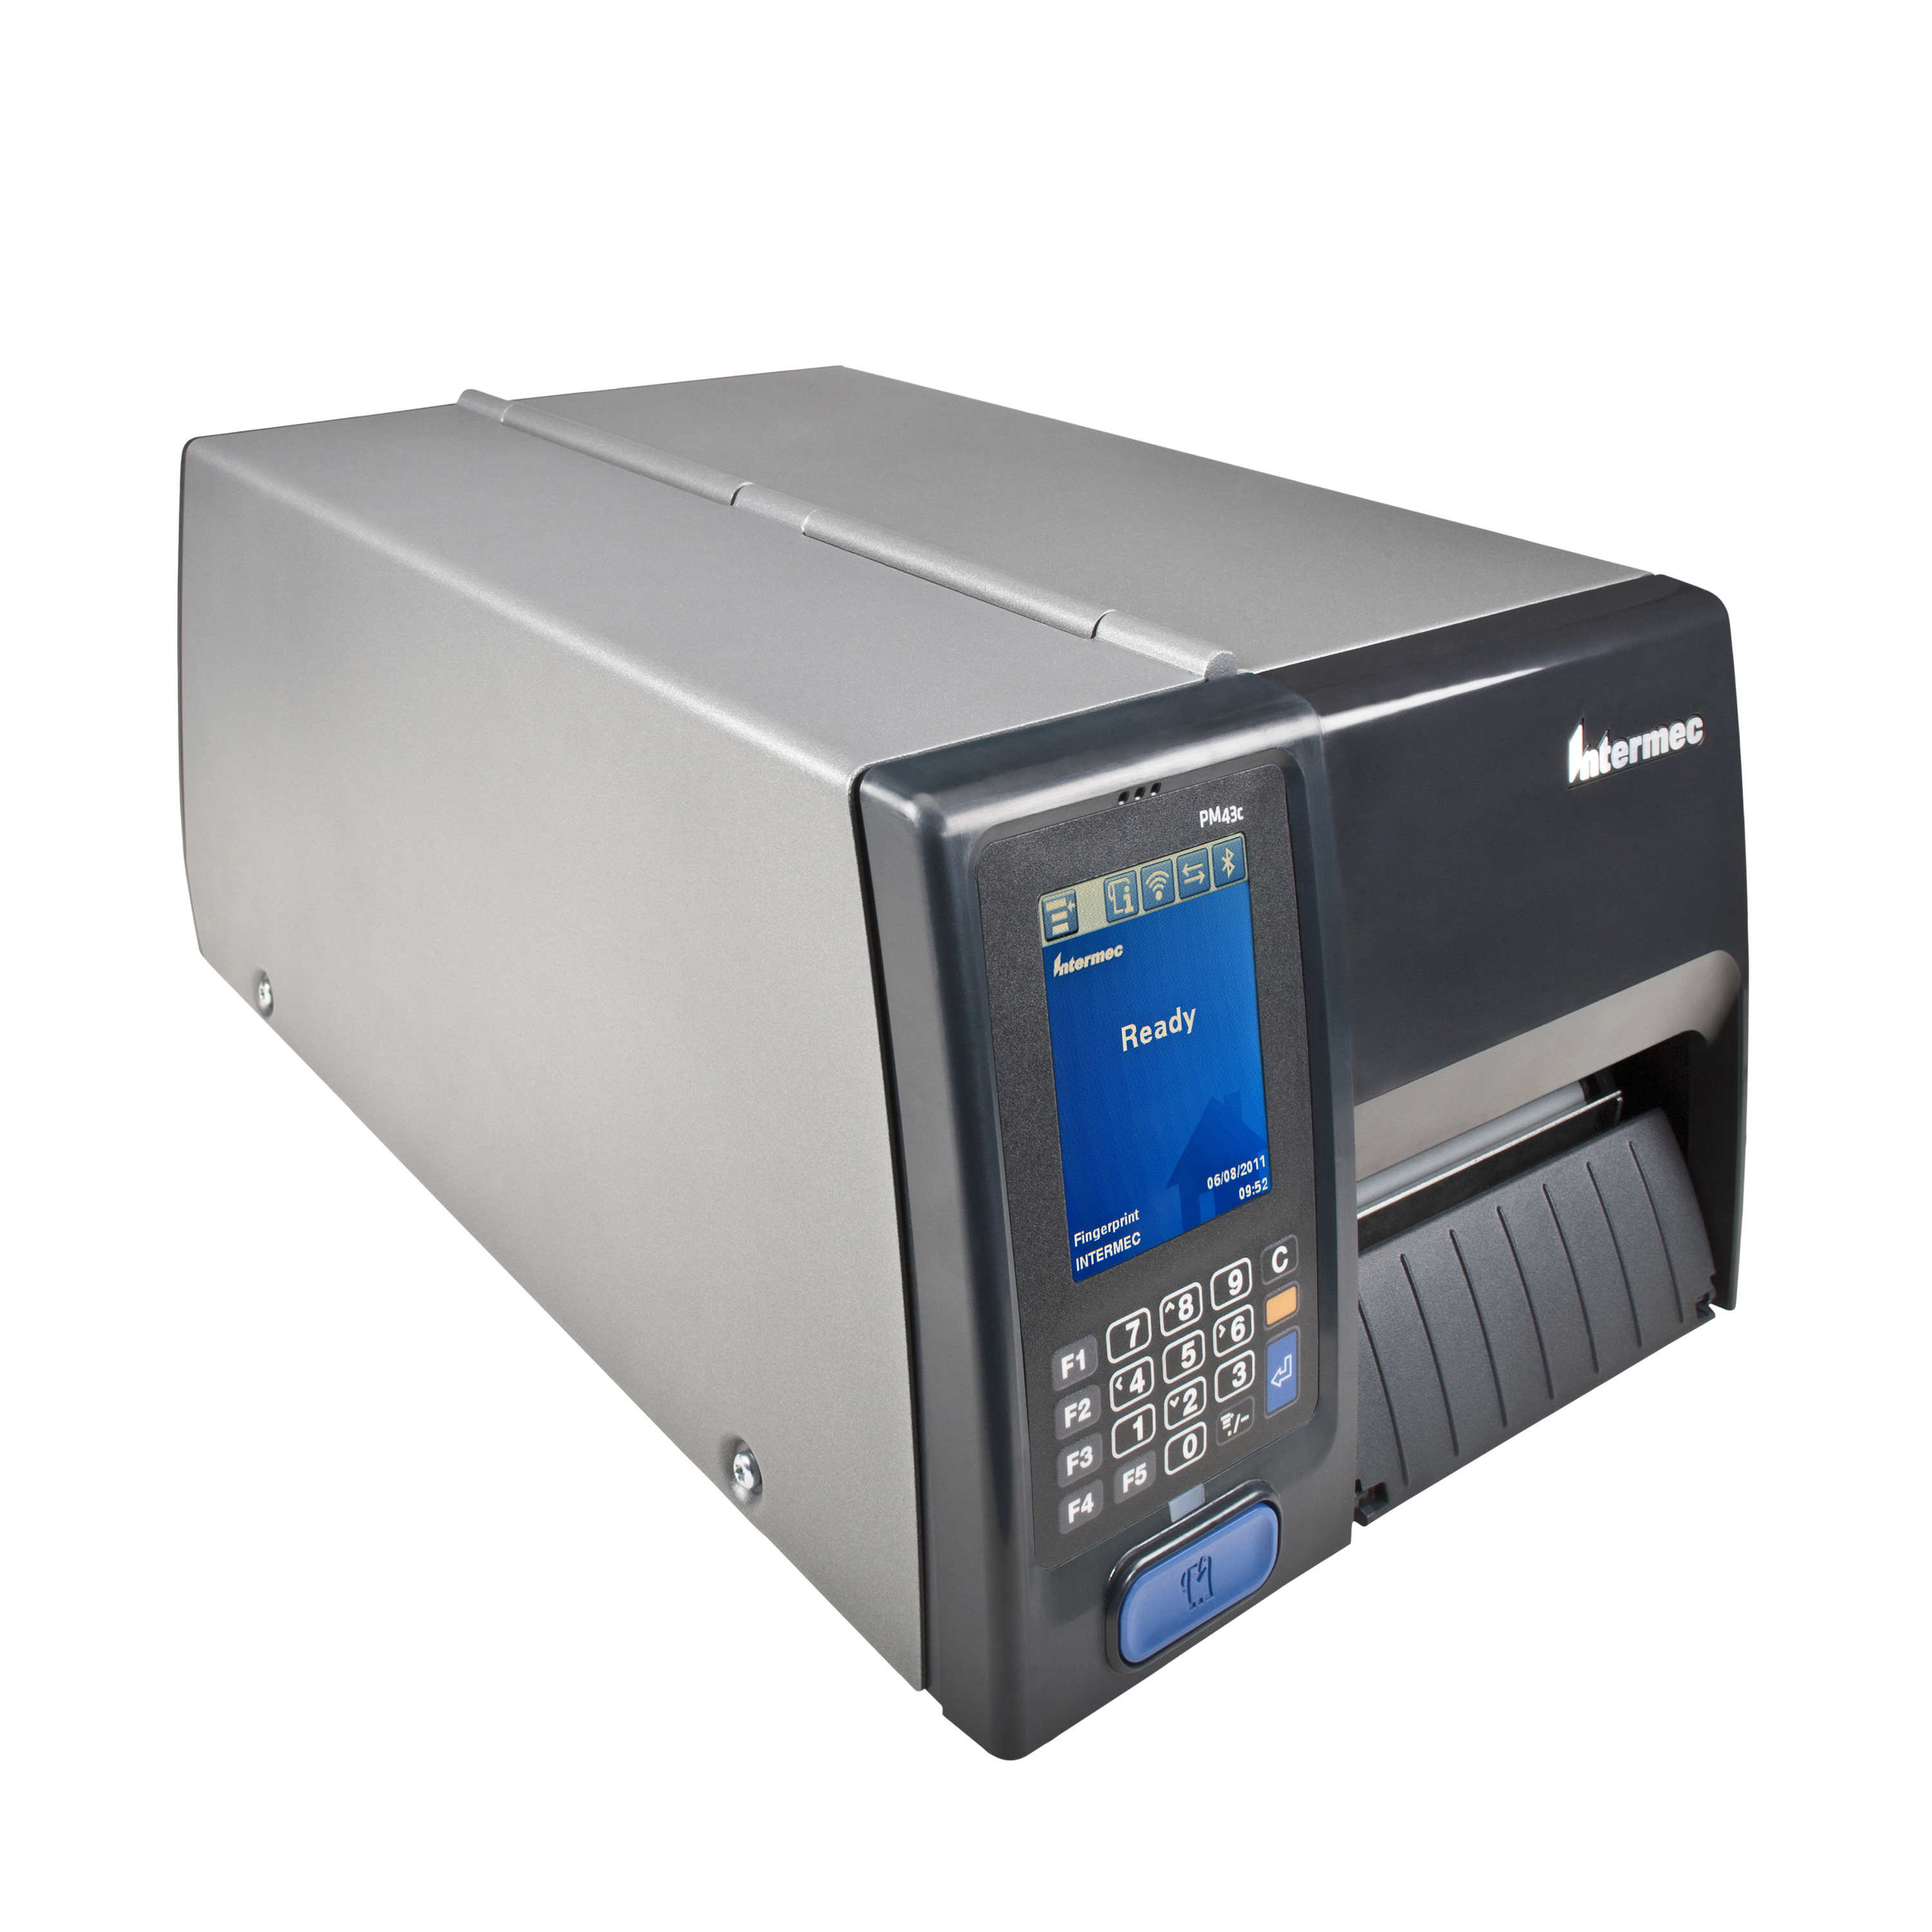 Intermec PM43/PM43c Mid-Range Printer in Milheiros